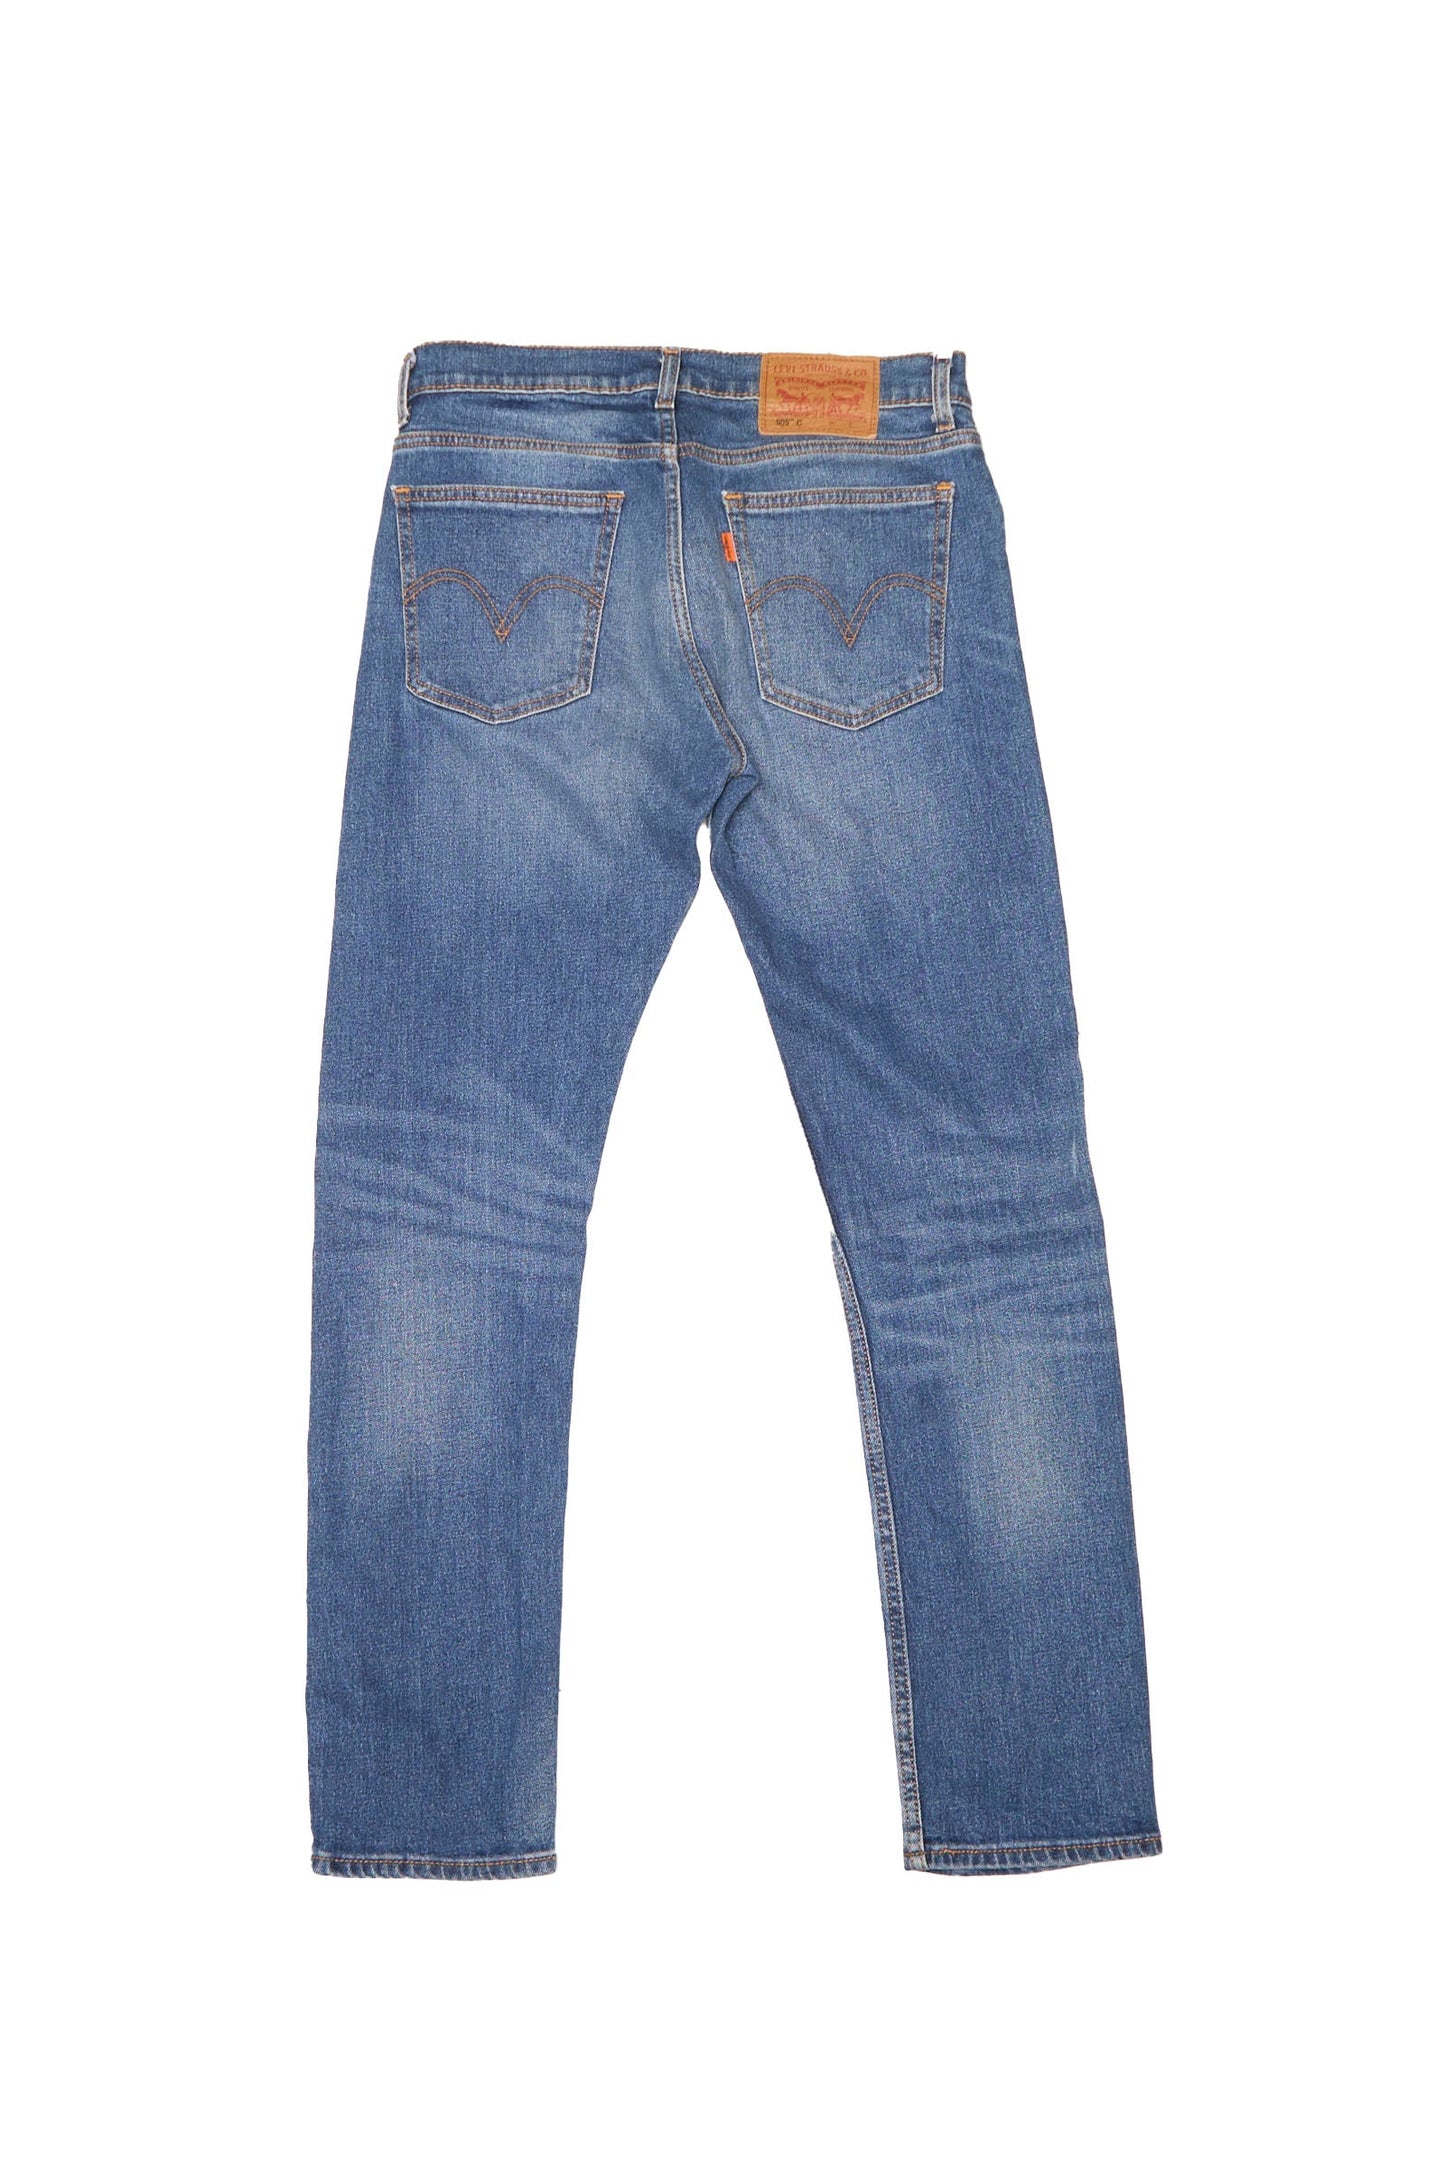 Levis 505 Jeans - W30" L30"